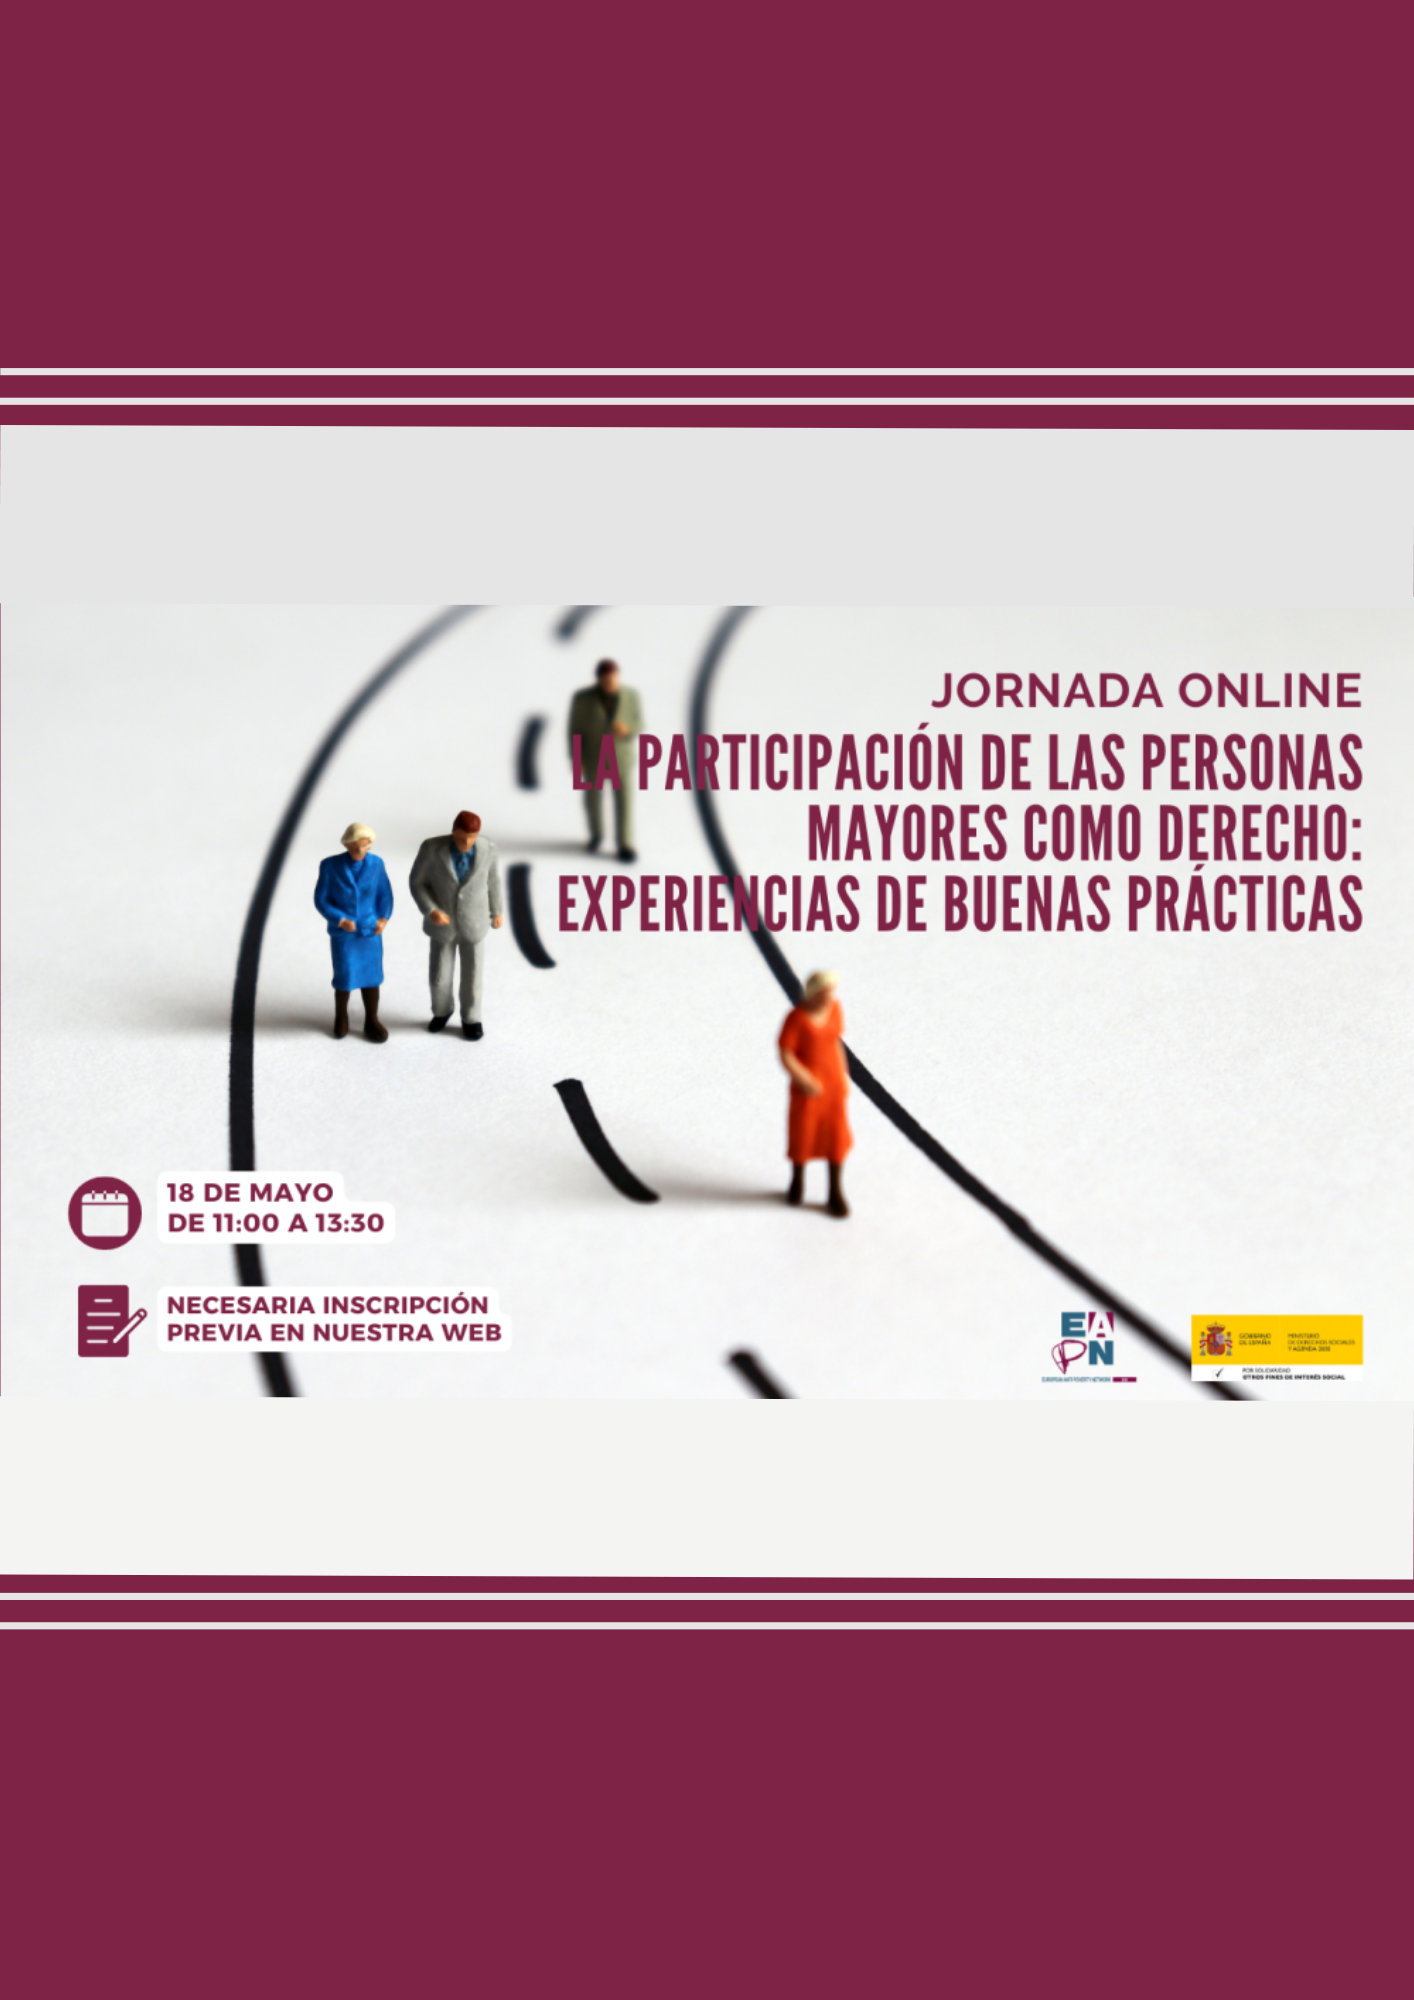 Cartel anunciador de la jornada: La participación de las personas mayores como derecho: experiencias de buenas prácticas 